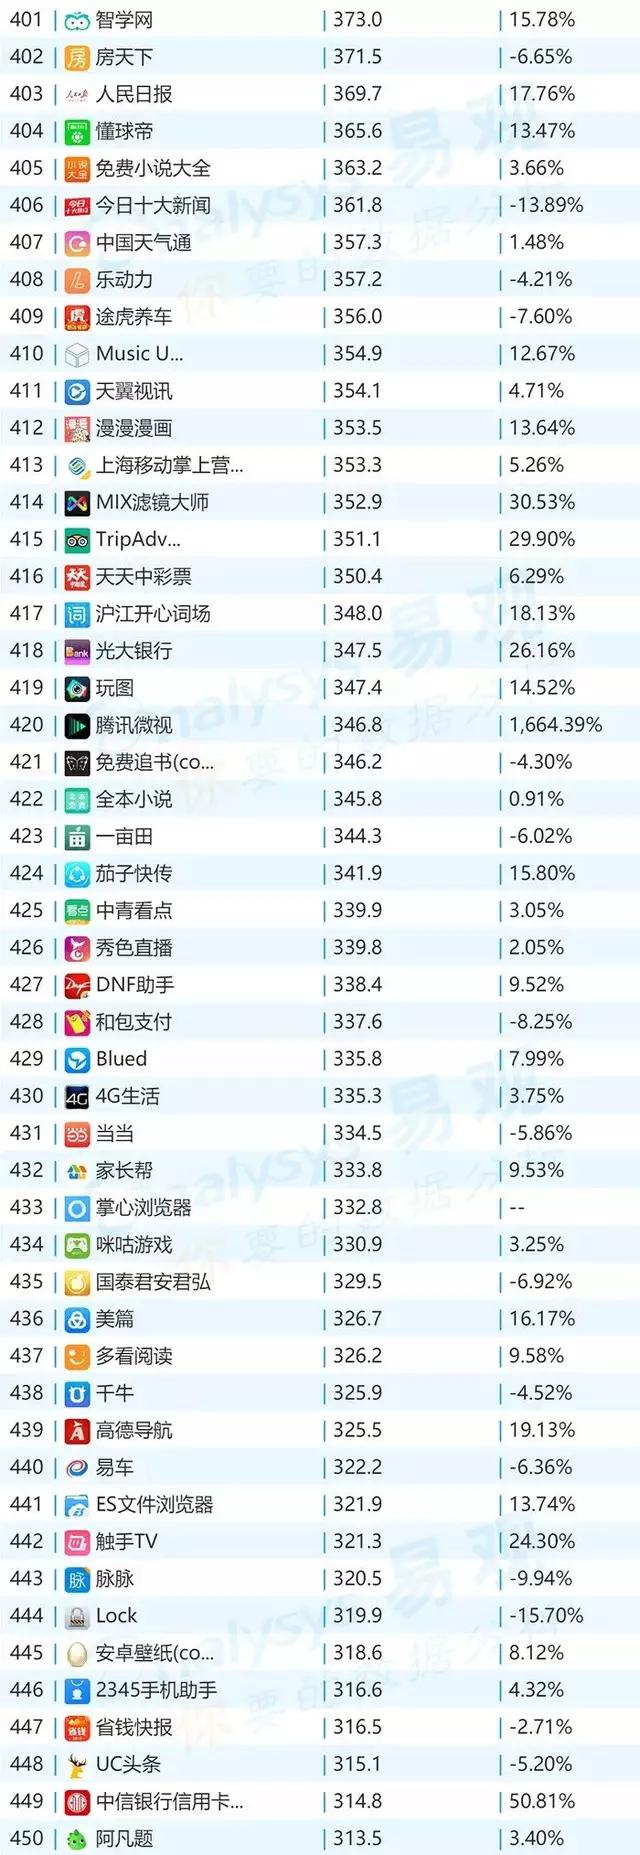 微信,2018年最新移动App TOP1000排行榜